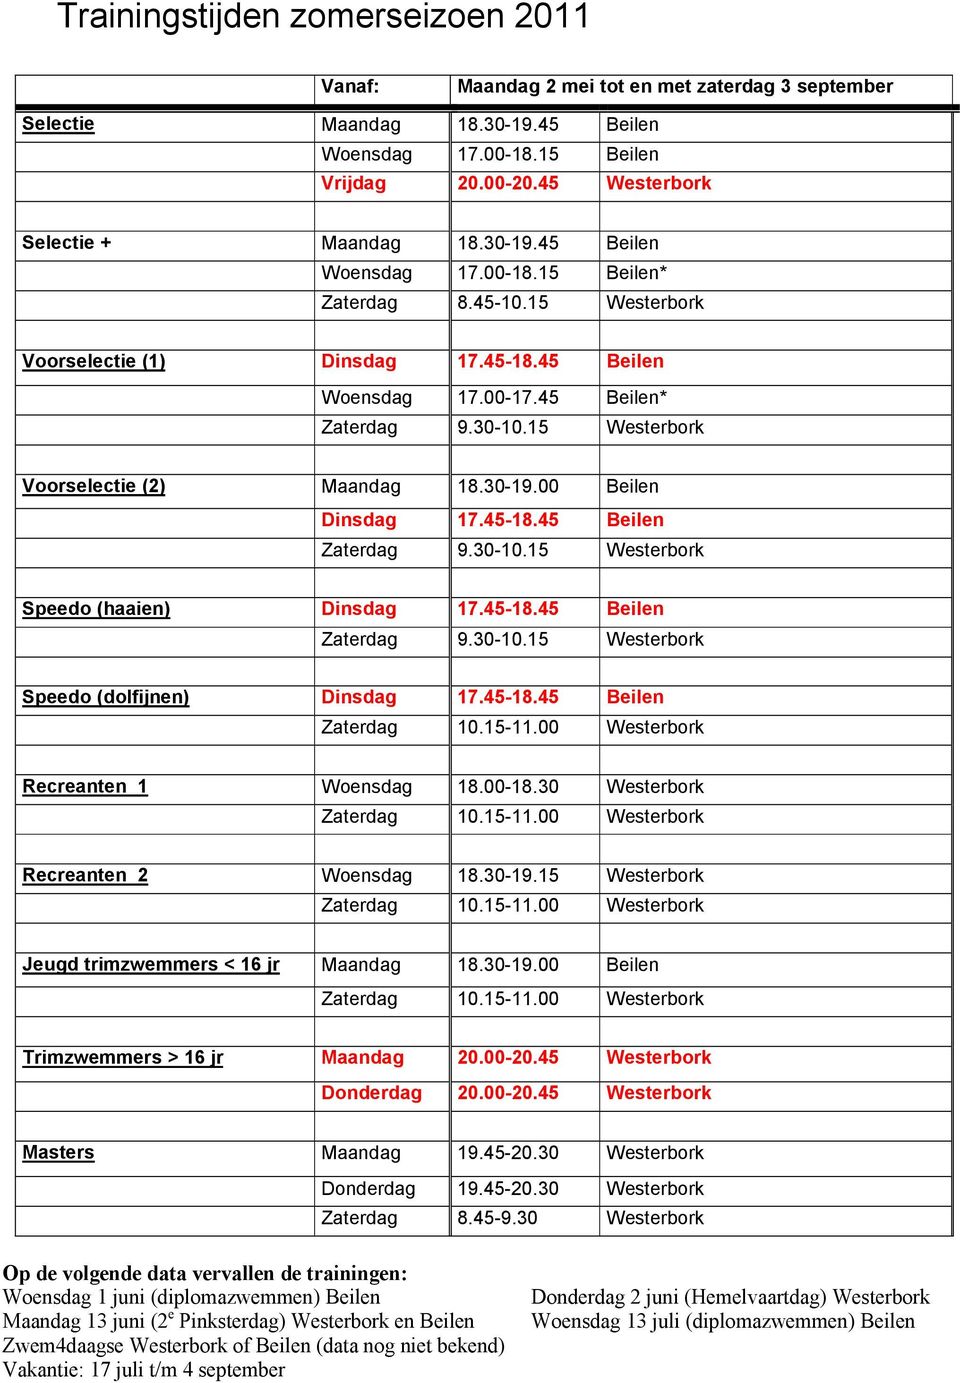 30-10.15 Westerbork Voorselectie (2) Maandag 18.30-19.00 Beilen Dinsdag 17.45-18.45 Beilen Zaterdag 9.30-10.15 Westerbork Speedo (haaien) Dinsdag 17.45-18.45 Beilen Zaterdag 9.30-10.15 Westerbork Speedo (dolfijnen) Dinsdag 17.